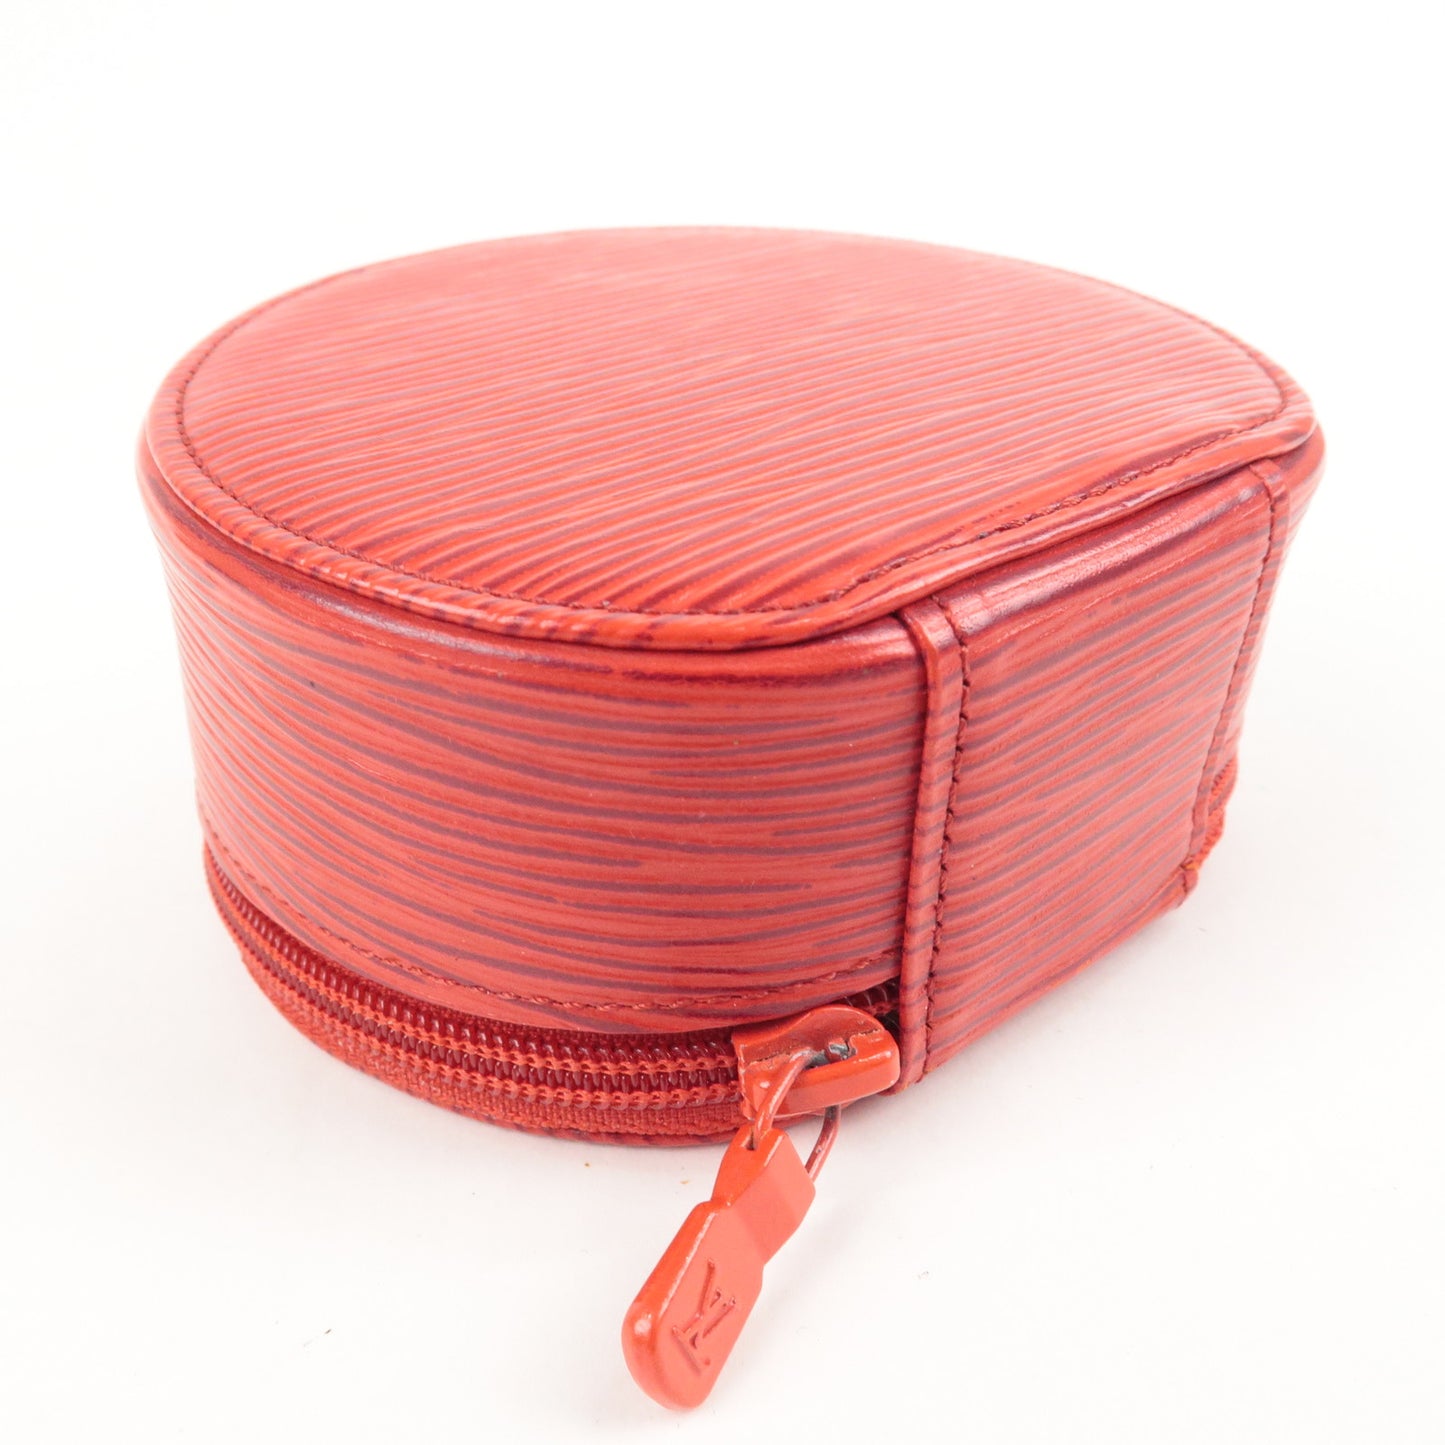 Louis Vuitton Epi Ecrin Bijoux 10 Jewelry Case Red M48217